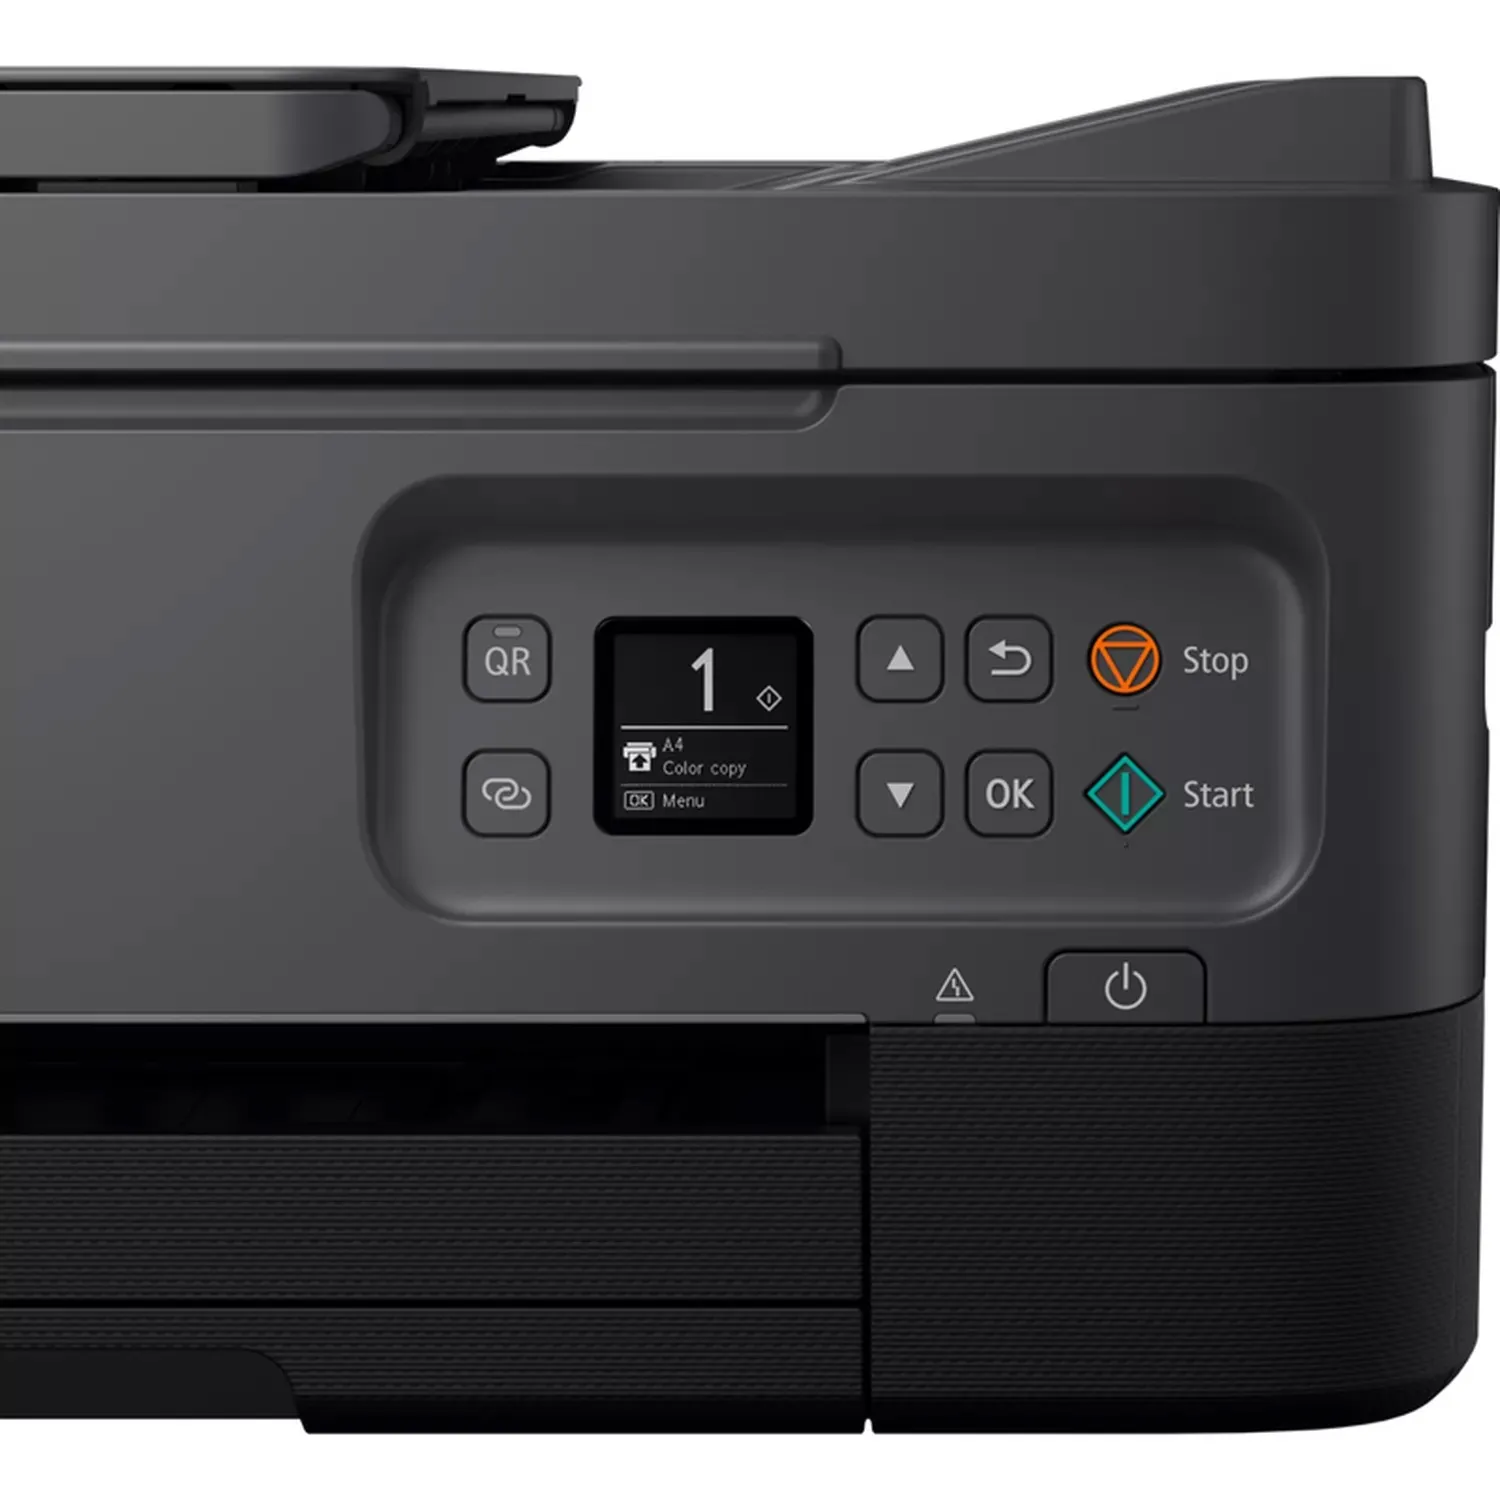 Vente CANON PIXMA TS7450i Inkjet Multifunction Printer 13ppm Canon au meilleur prix - visuel 6